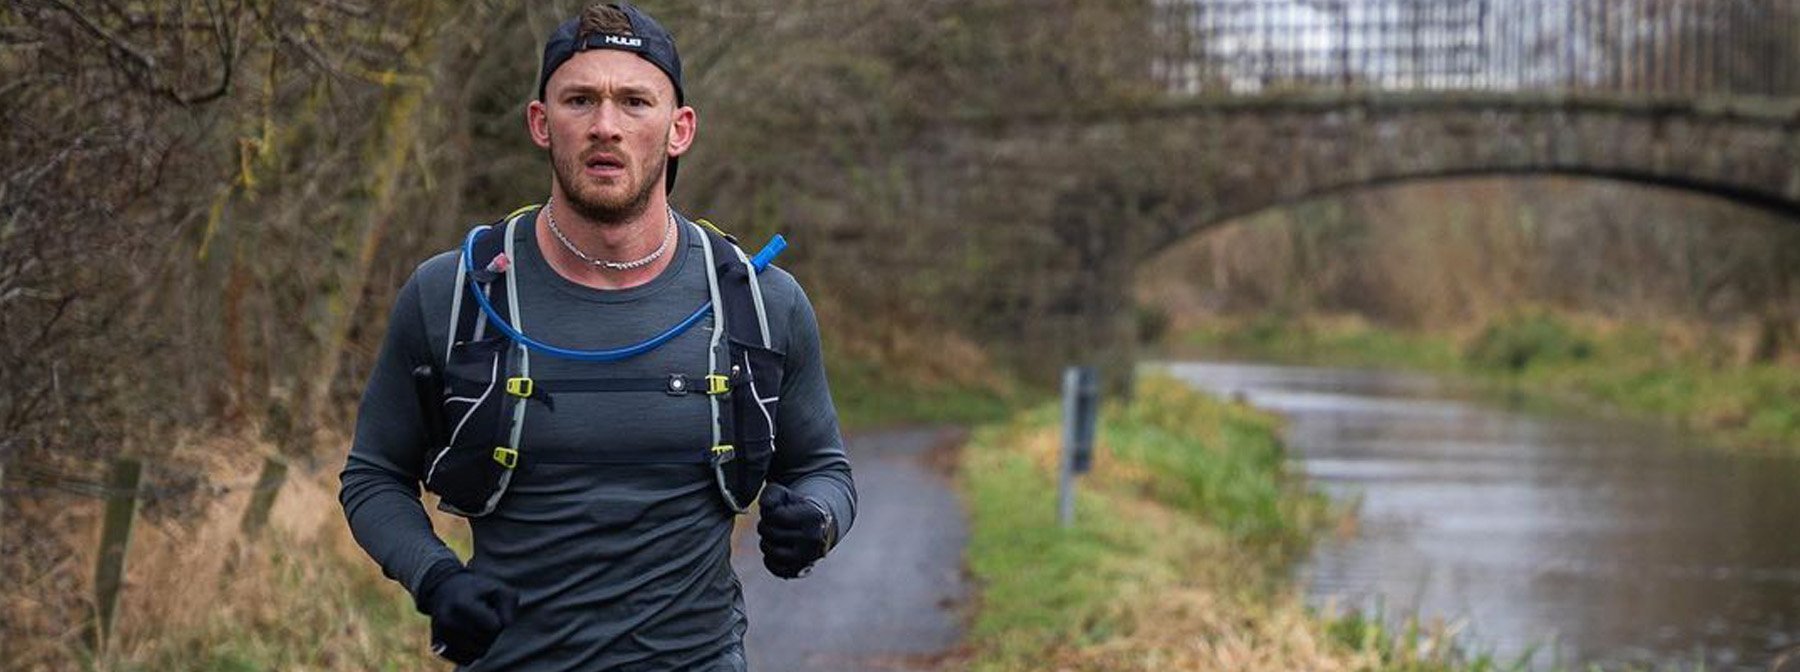 5 km schneller laufen mit Hybrid-Athlet Fergus Crawley